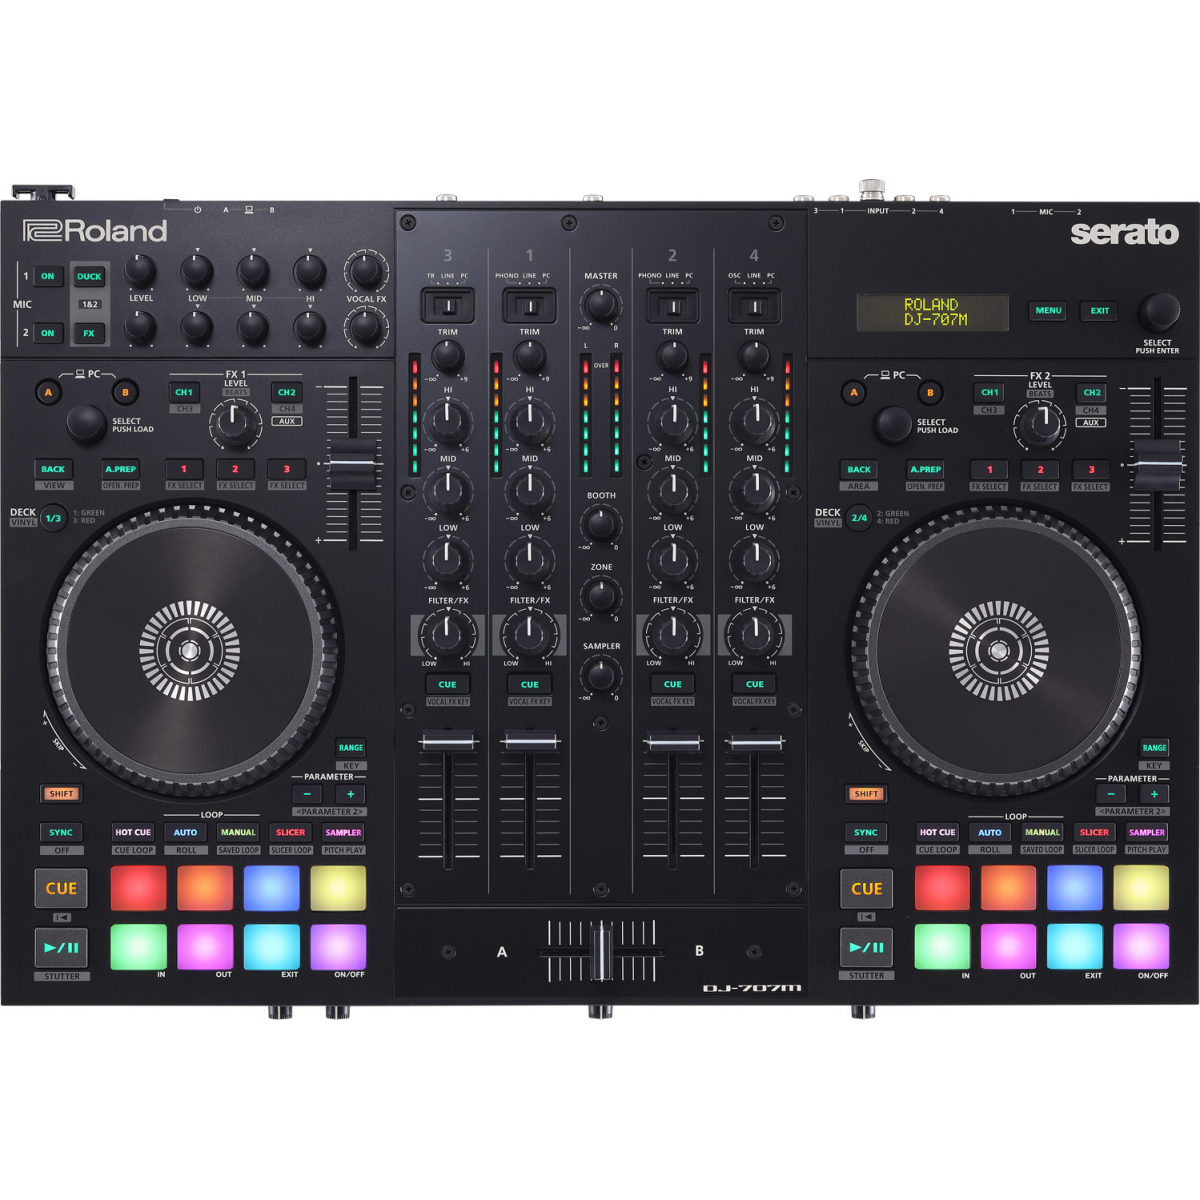 Contrôleurs DJ USB - Roland - DJ-707M